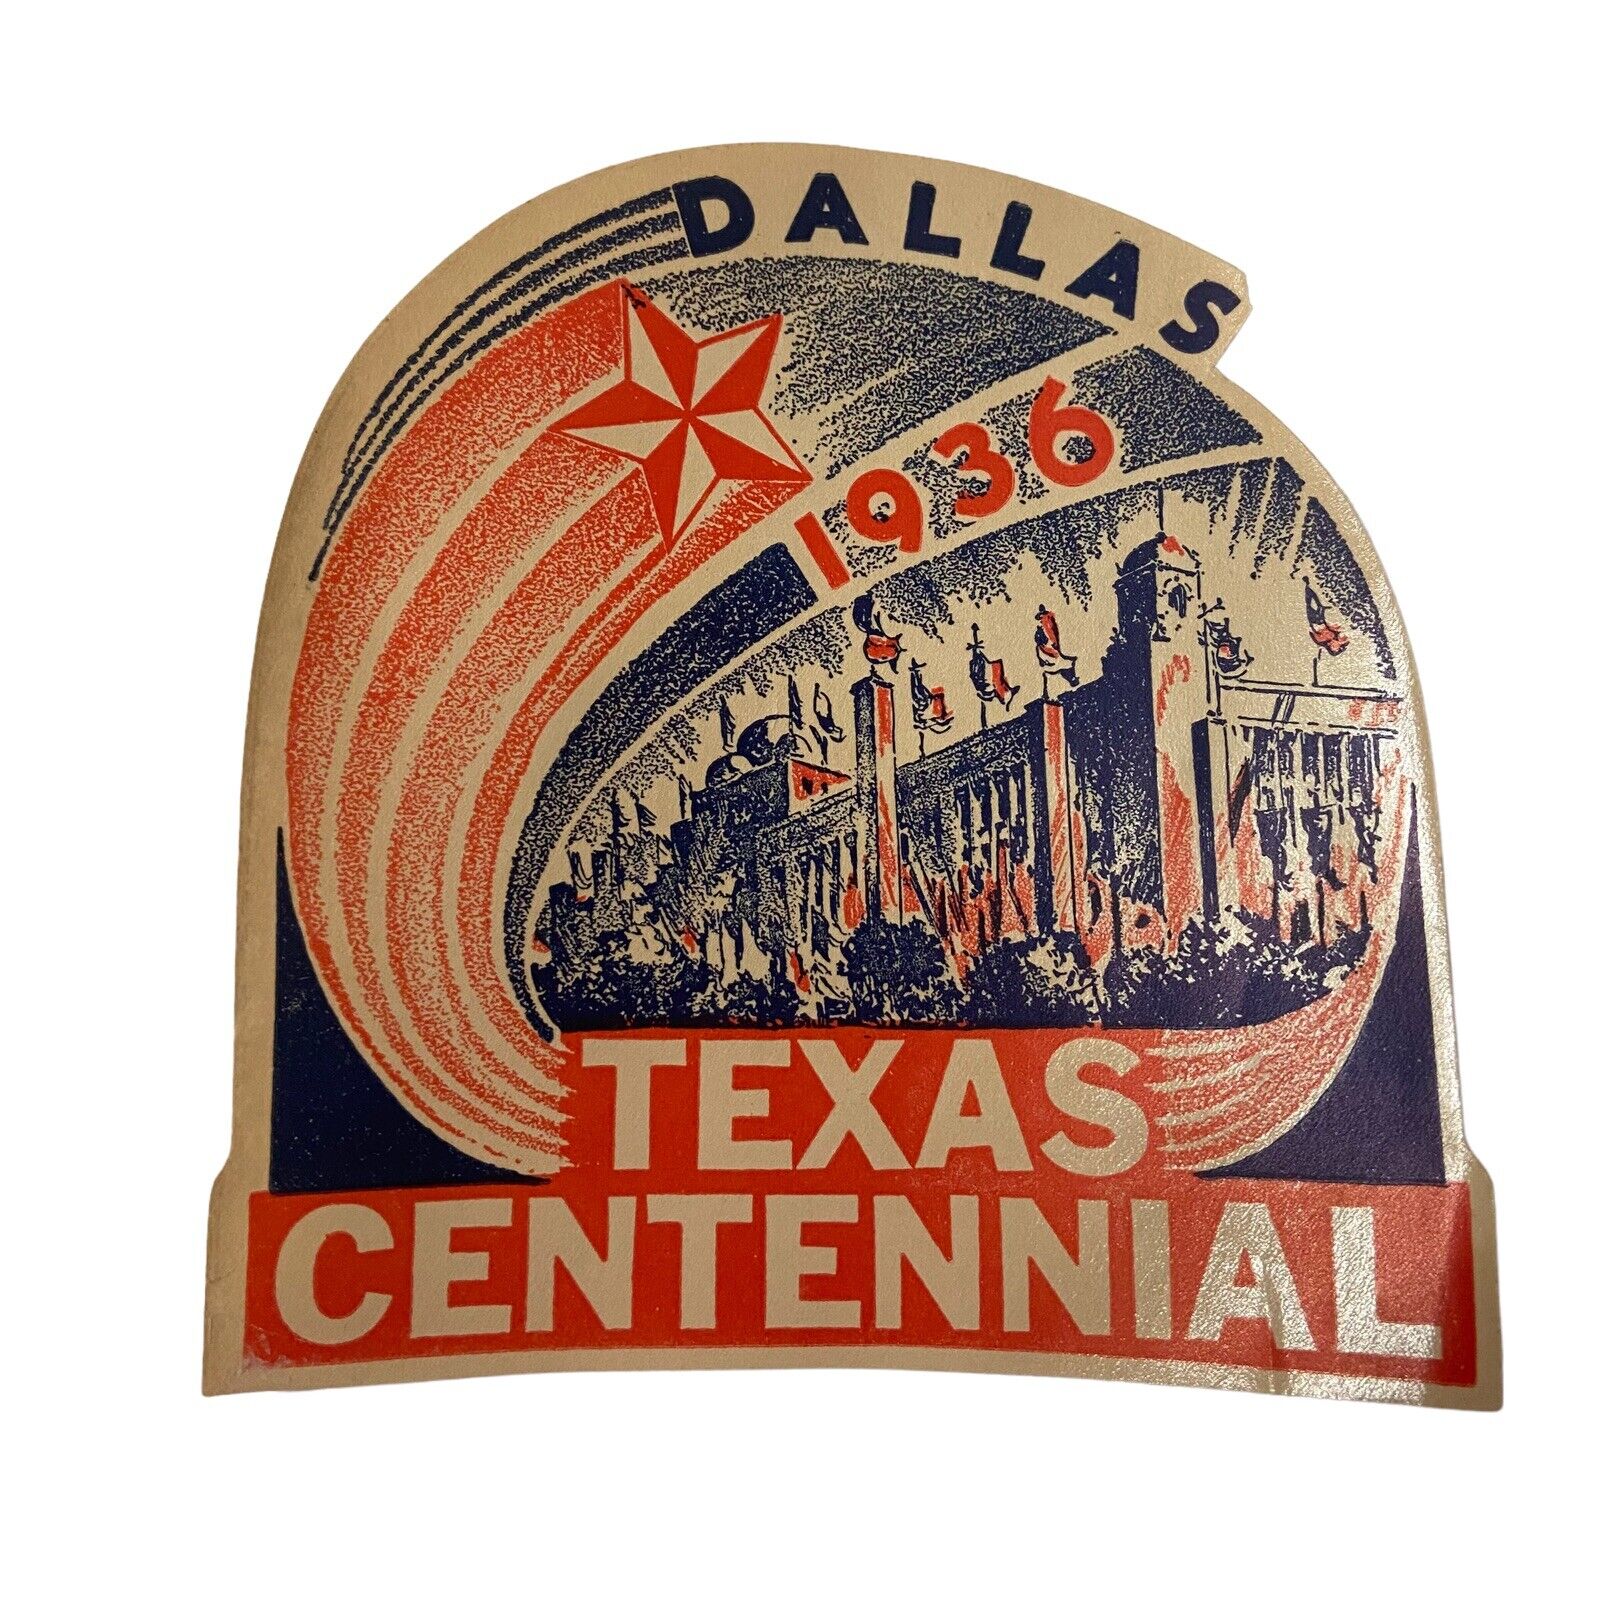 1936 World's Fair Dallas Texas Centennial Exposition Luggage Label Sticker